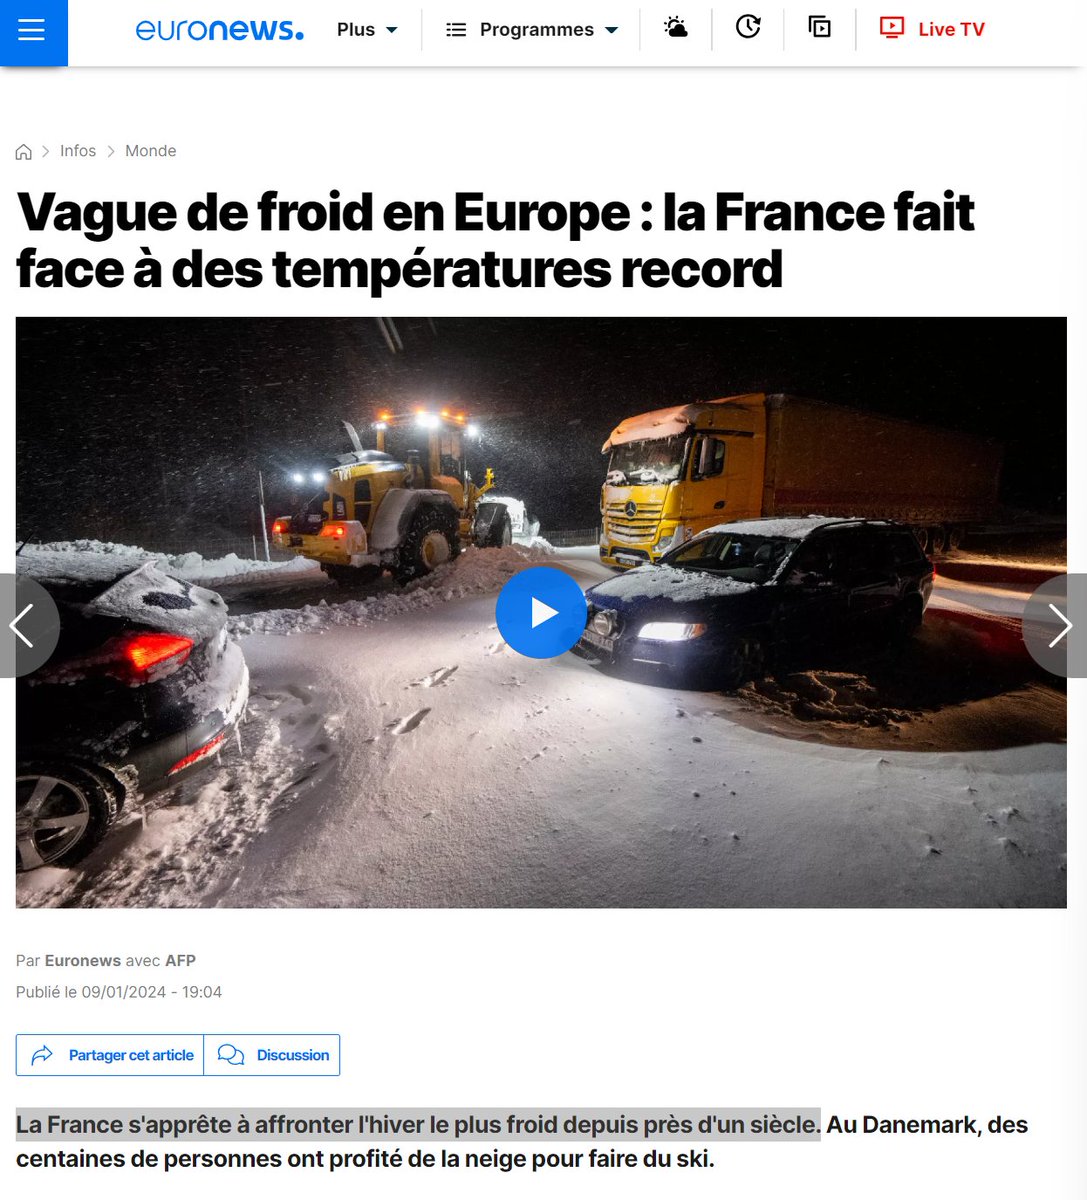 Je suis sidéré. Ca va beaucoup trop loin ! C'est de la désinformation pure @euronews : 'La France s'apprête à affronter l'hiver le plus froid depuis près d'un siècle', 'la France fait face à des températures records'. ➡️Aucun record de froid n'a été battu. ➡️L'hiver est doux,